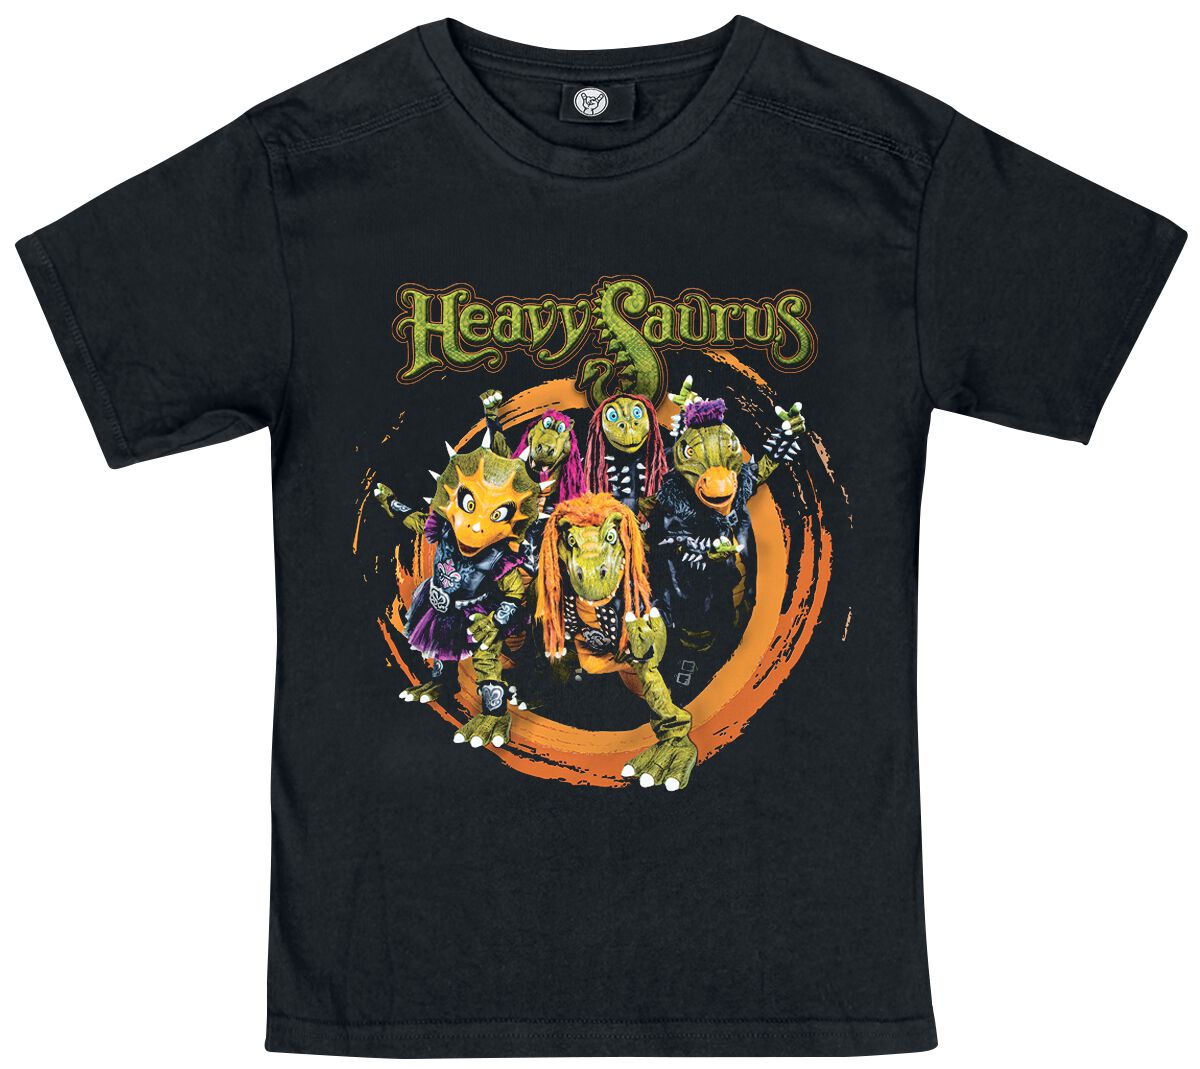 Heavysaurus T-Shirt für Kinder - Metal-Kids - Rock `n Rarr - für Mädchen & Jungen - schwarz  - Lizenziertes Merchandise!